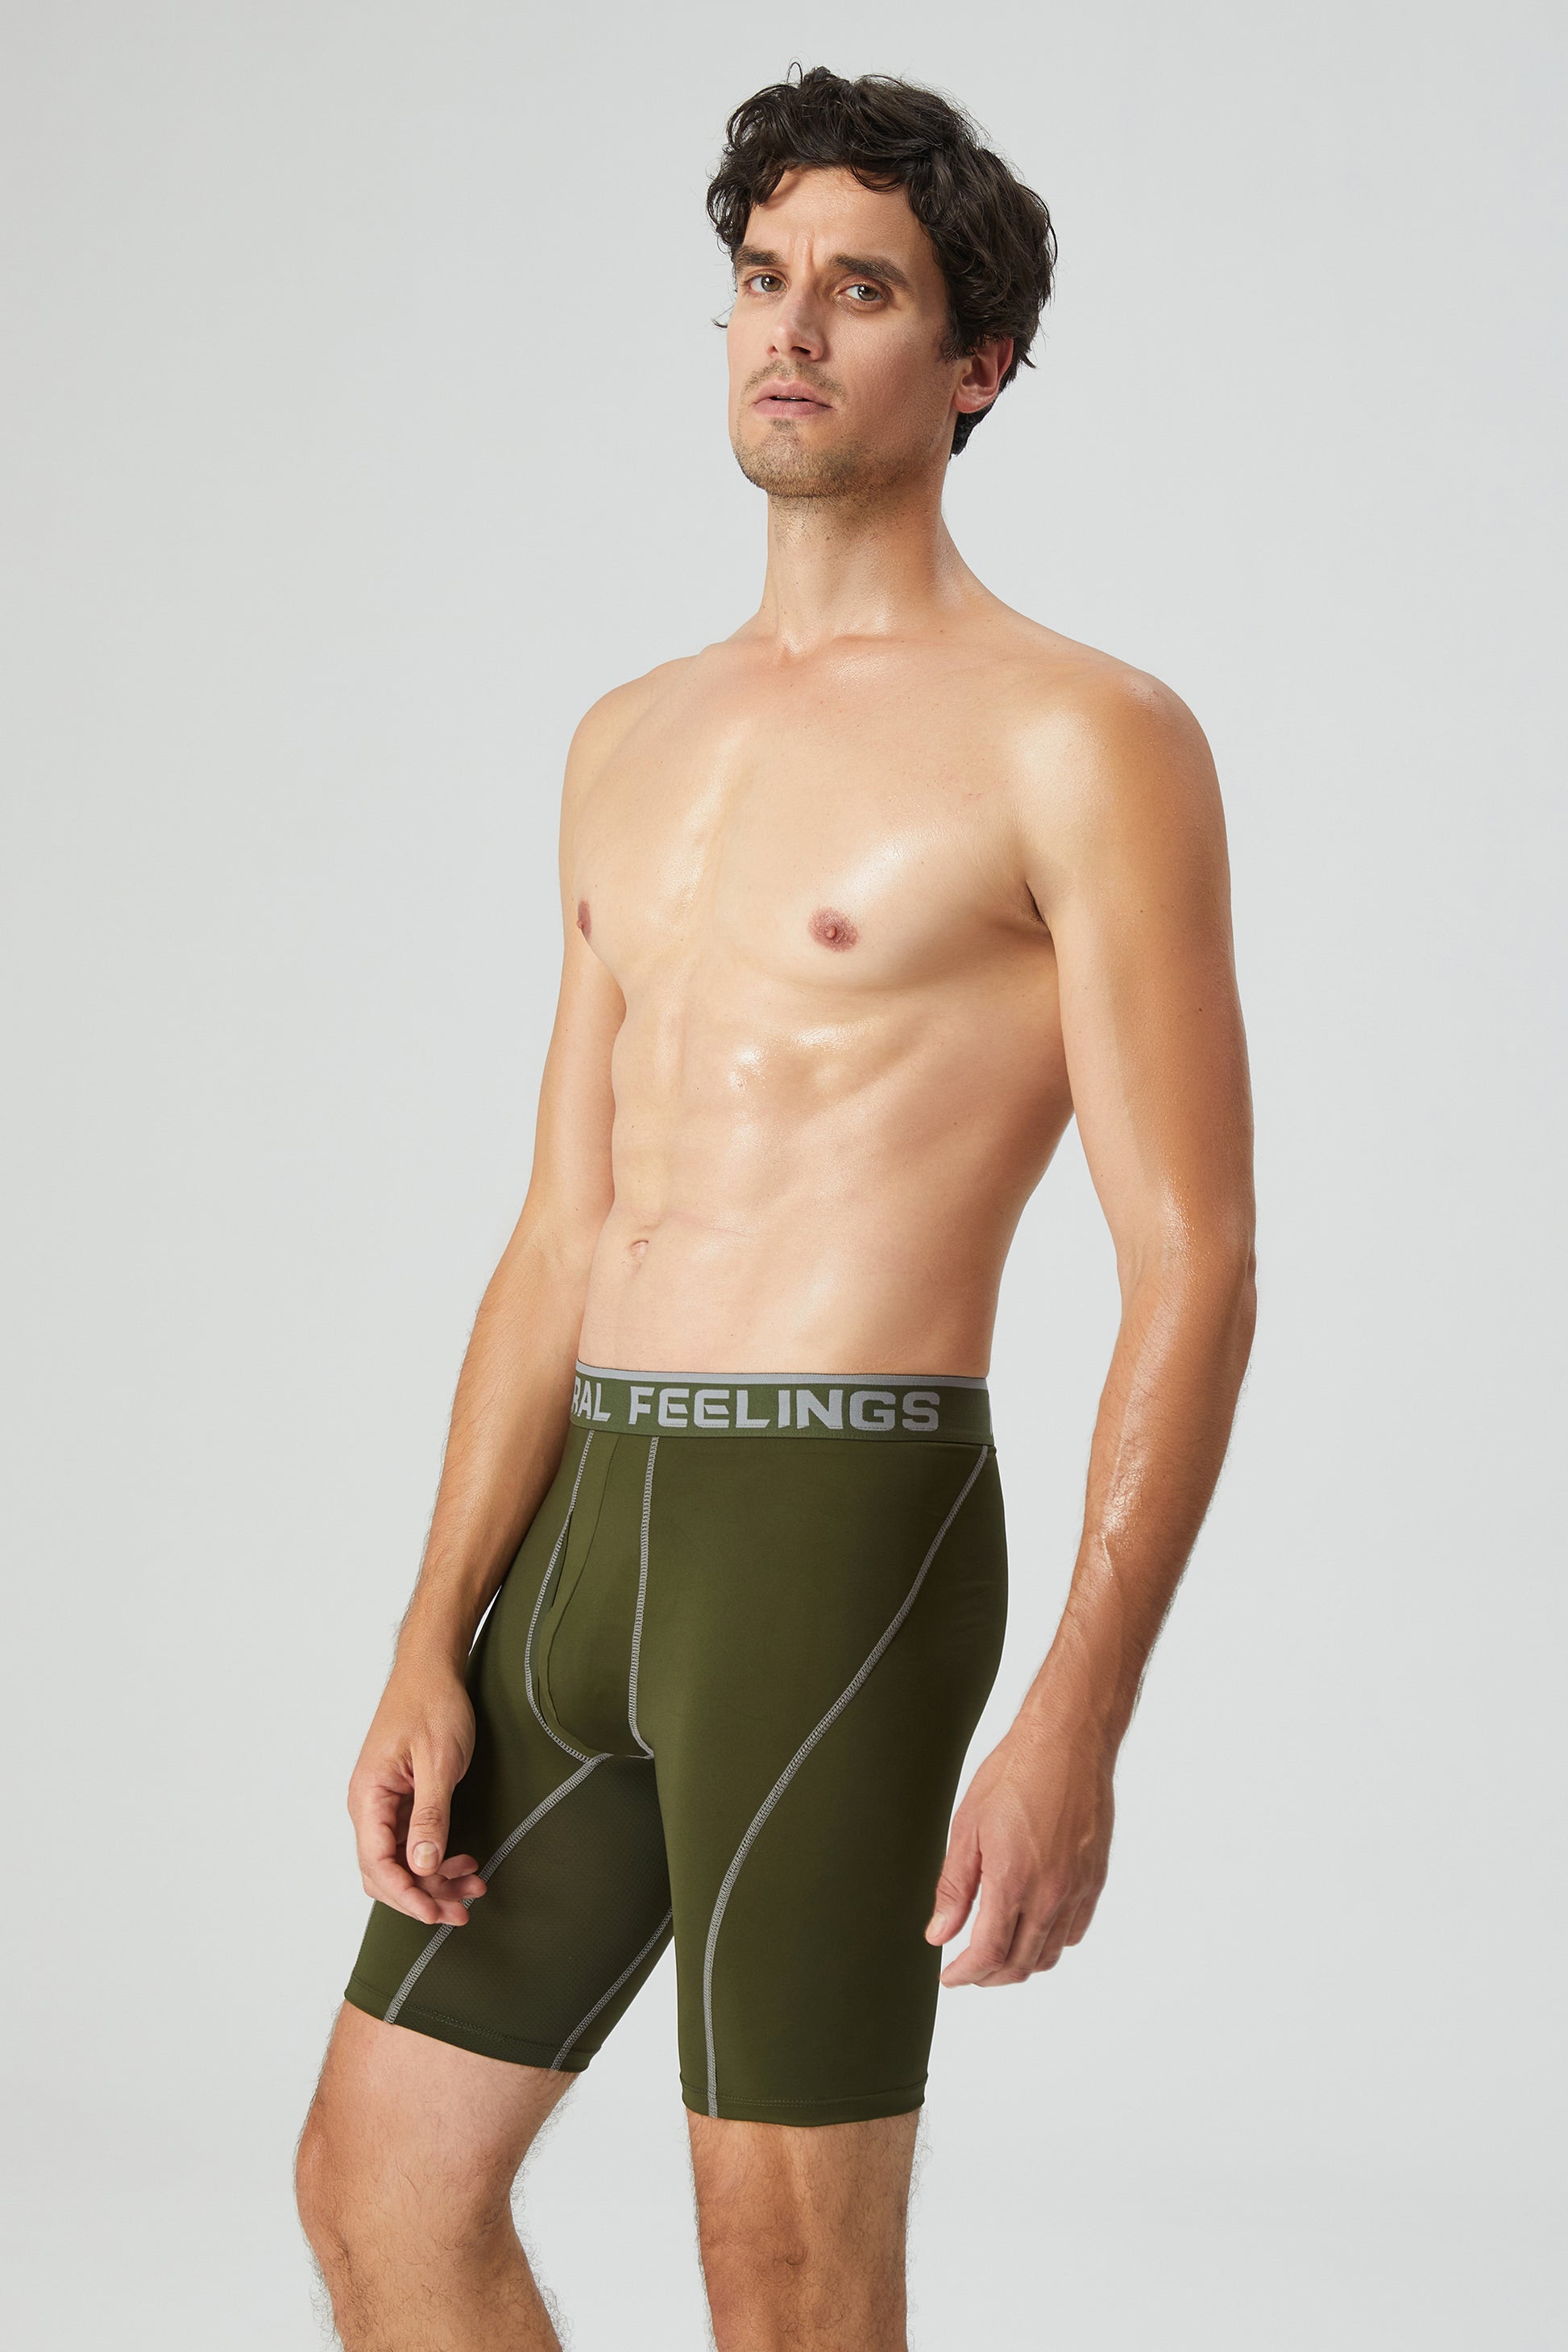 Natural Feelings Men's Underwear Soft Stretch Modal Trunks for Men